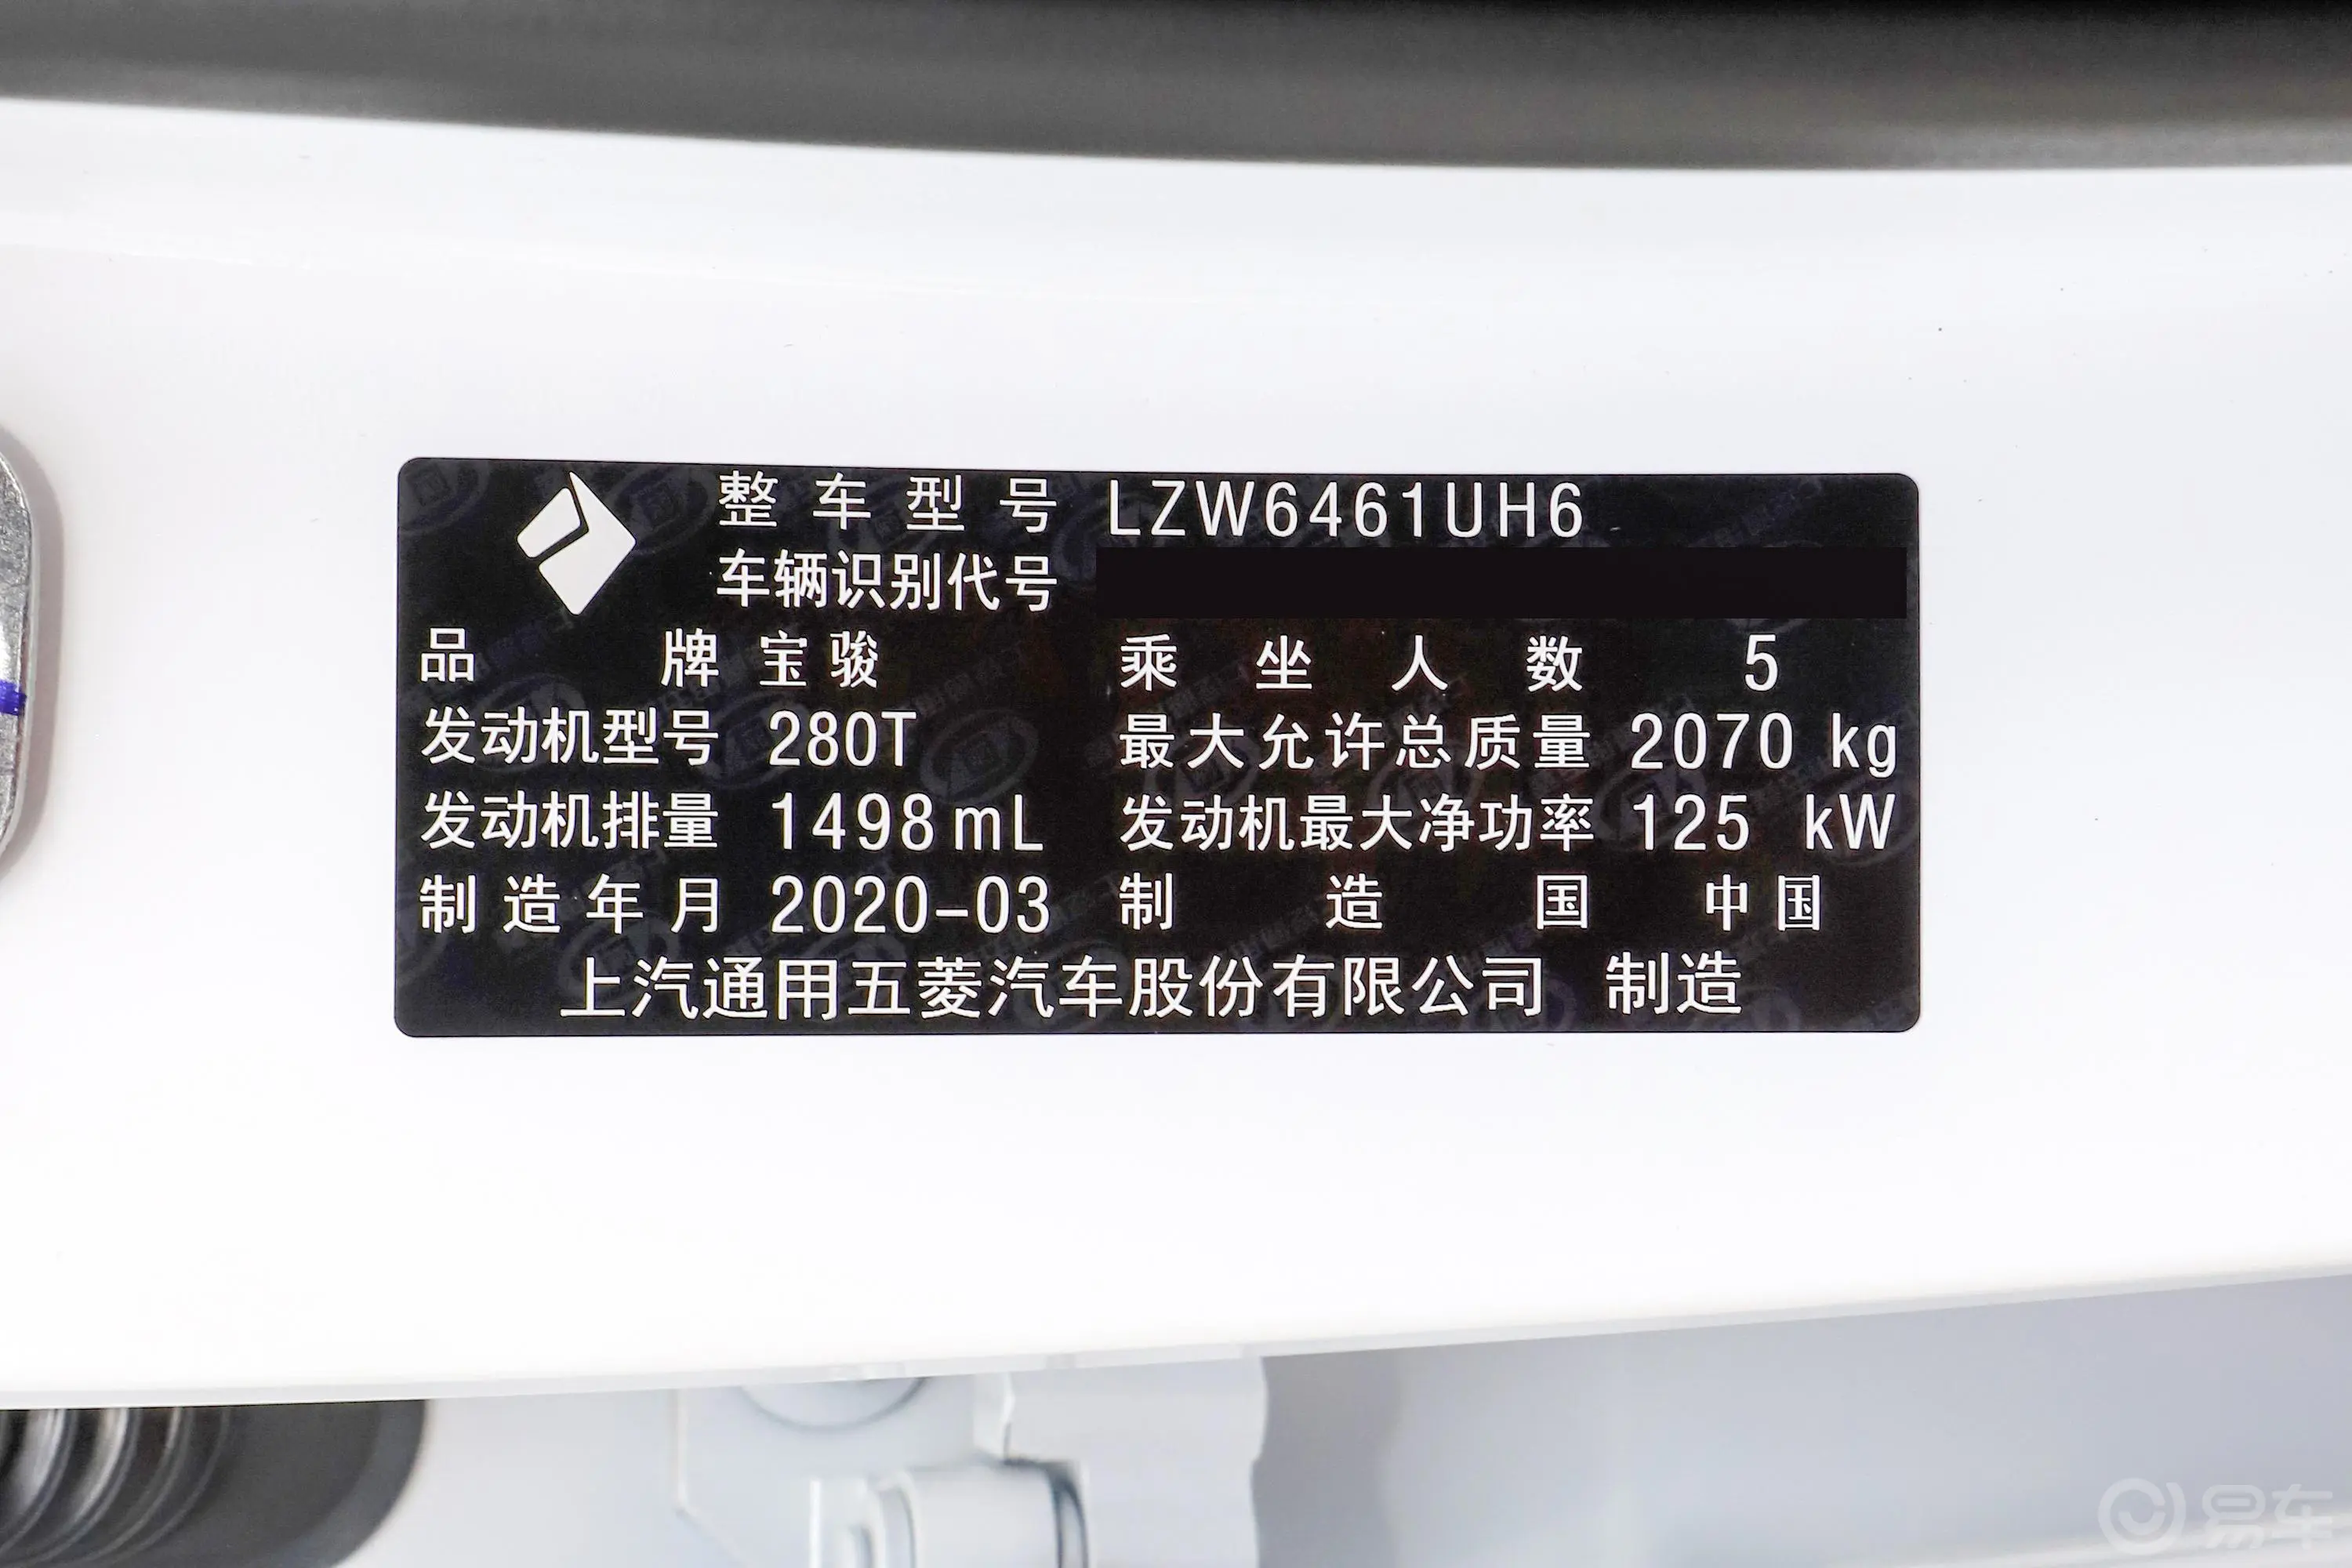 宝骏RS-5300T CVT 智能旗舰型车辆信息铭牌